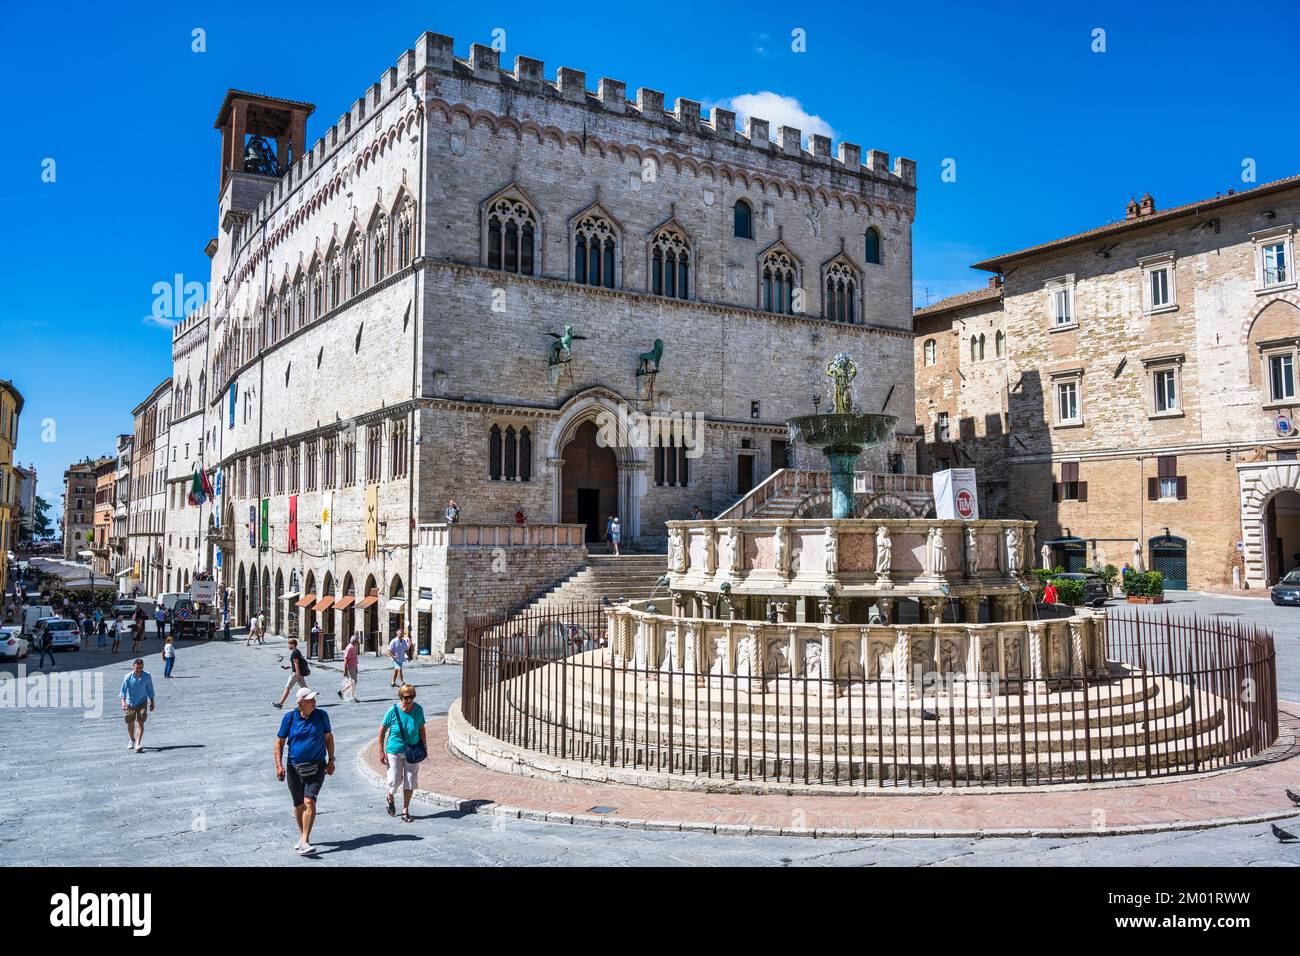 Medieval fountain (Fontana Maggiore) in front of Priori Palace (Palazzo dei Priori) in Piazza IV Novembre in Perugia, Umbria, Italy Stock Photo